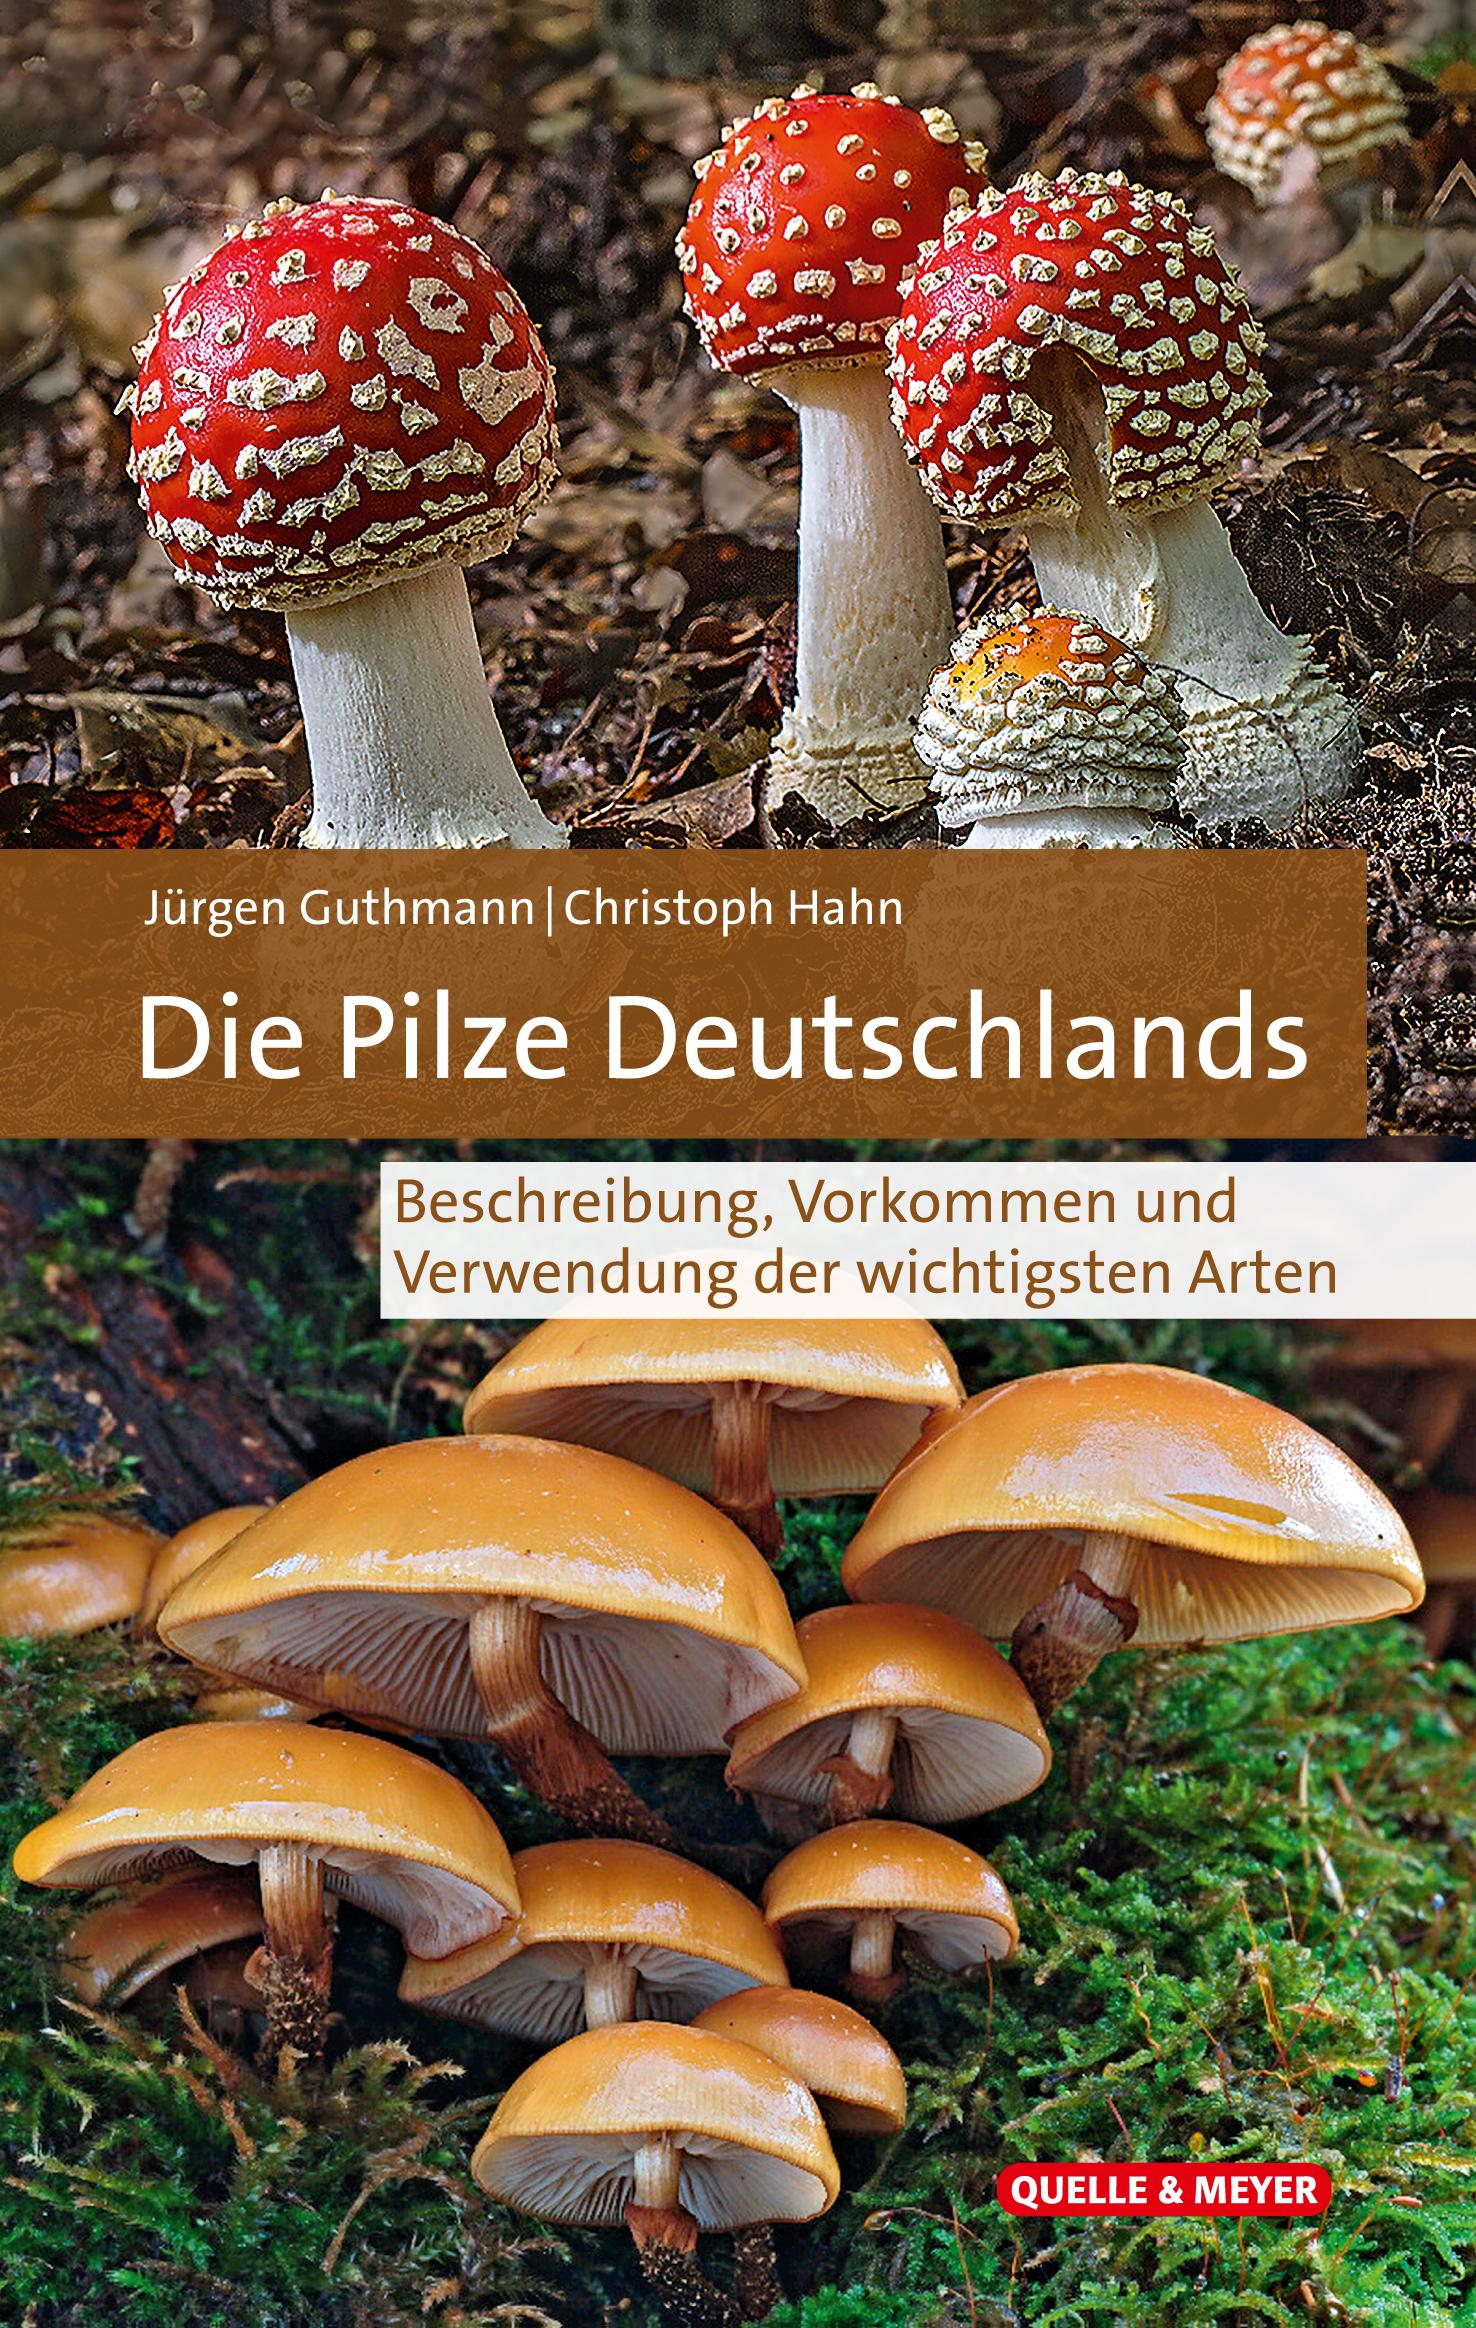 Die Pilze Deutschlands im Porträt